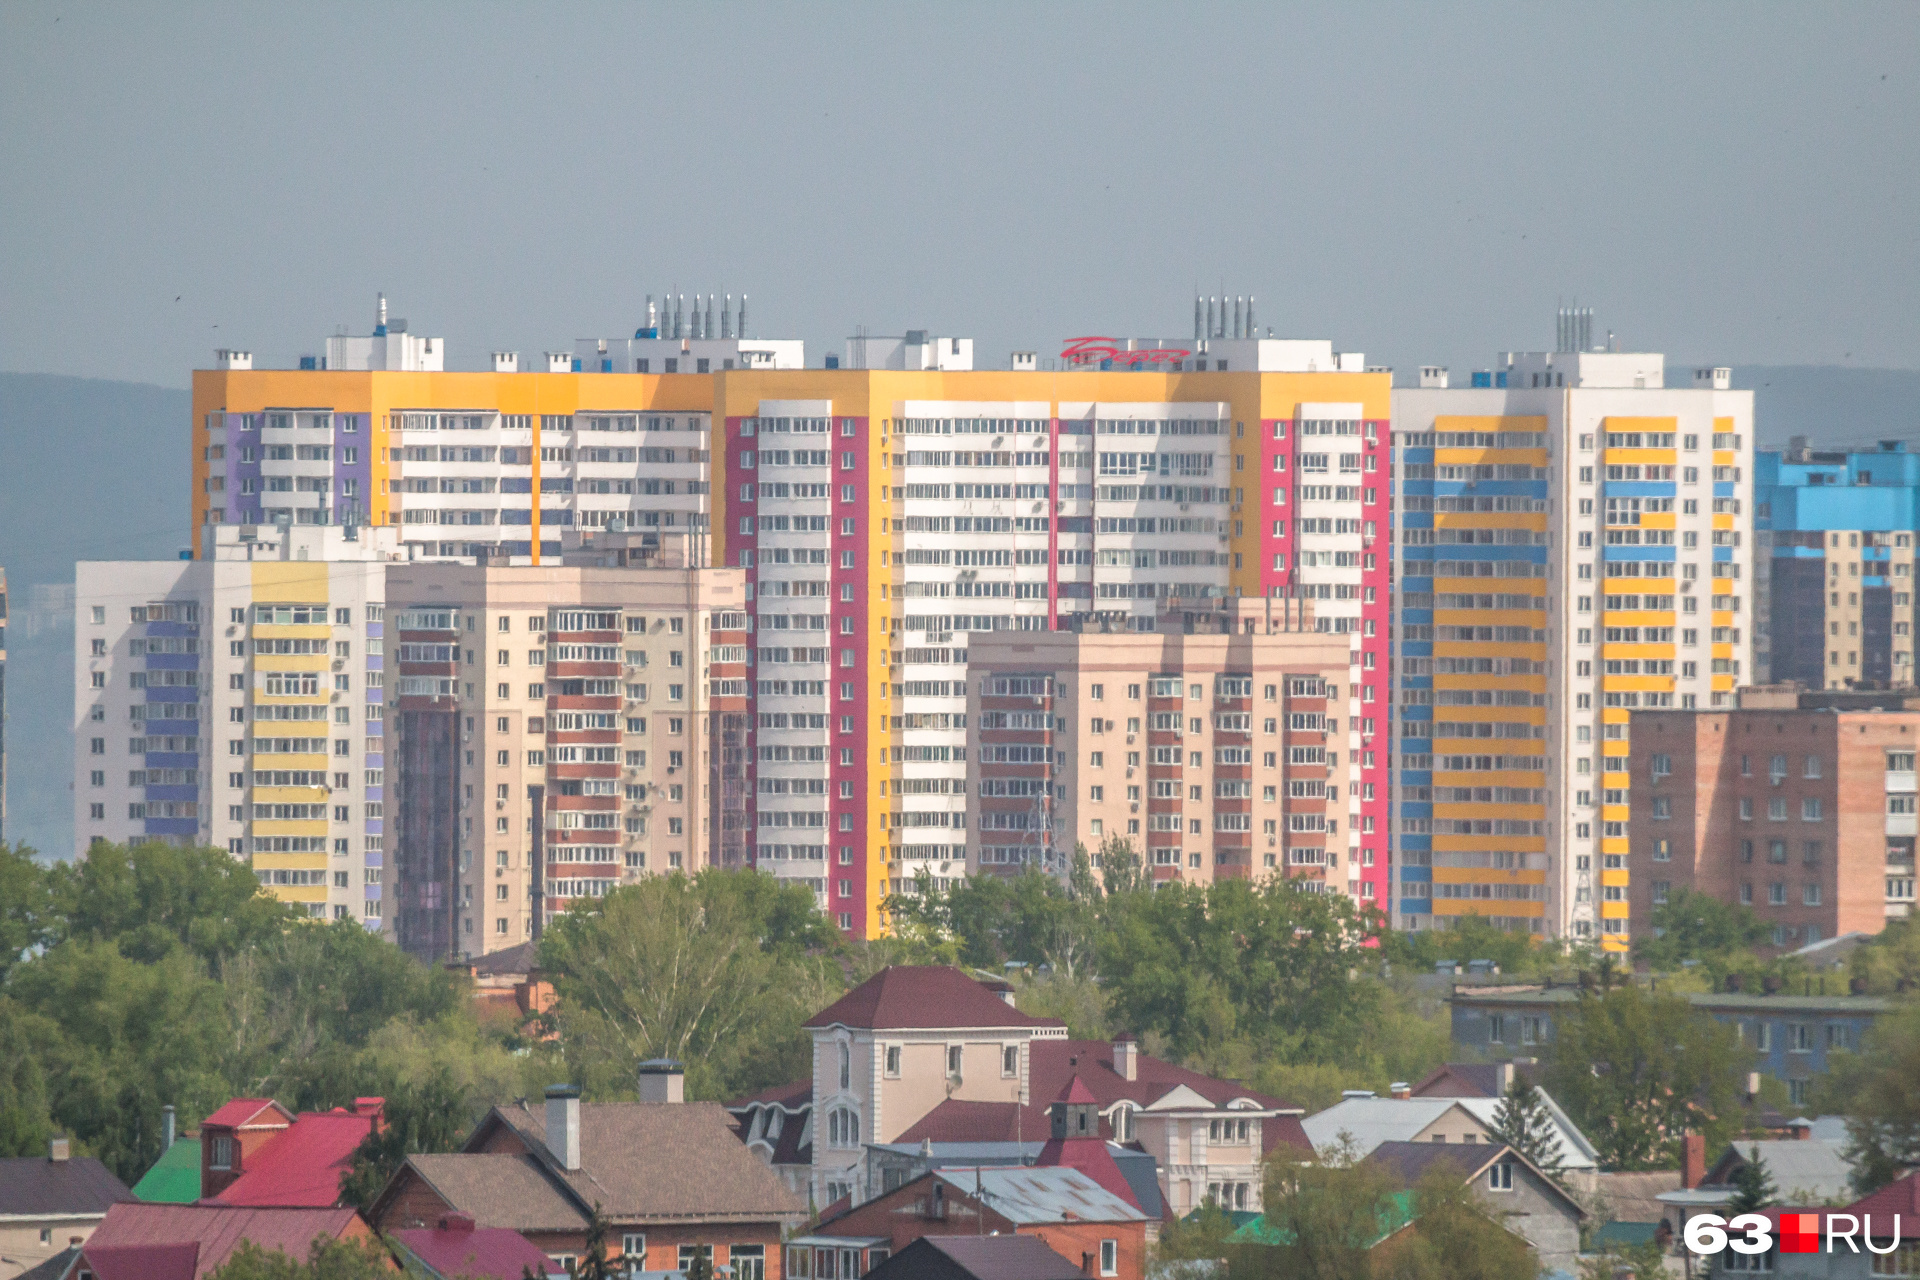 По мнению Виталия Стадникова, самарские застройщики делают квартиры по образцу советских времен